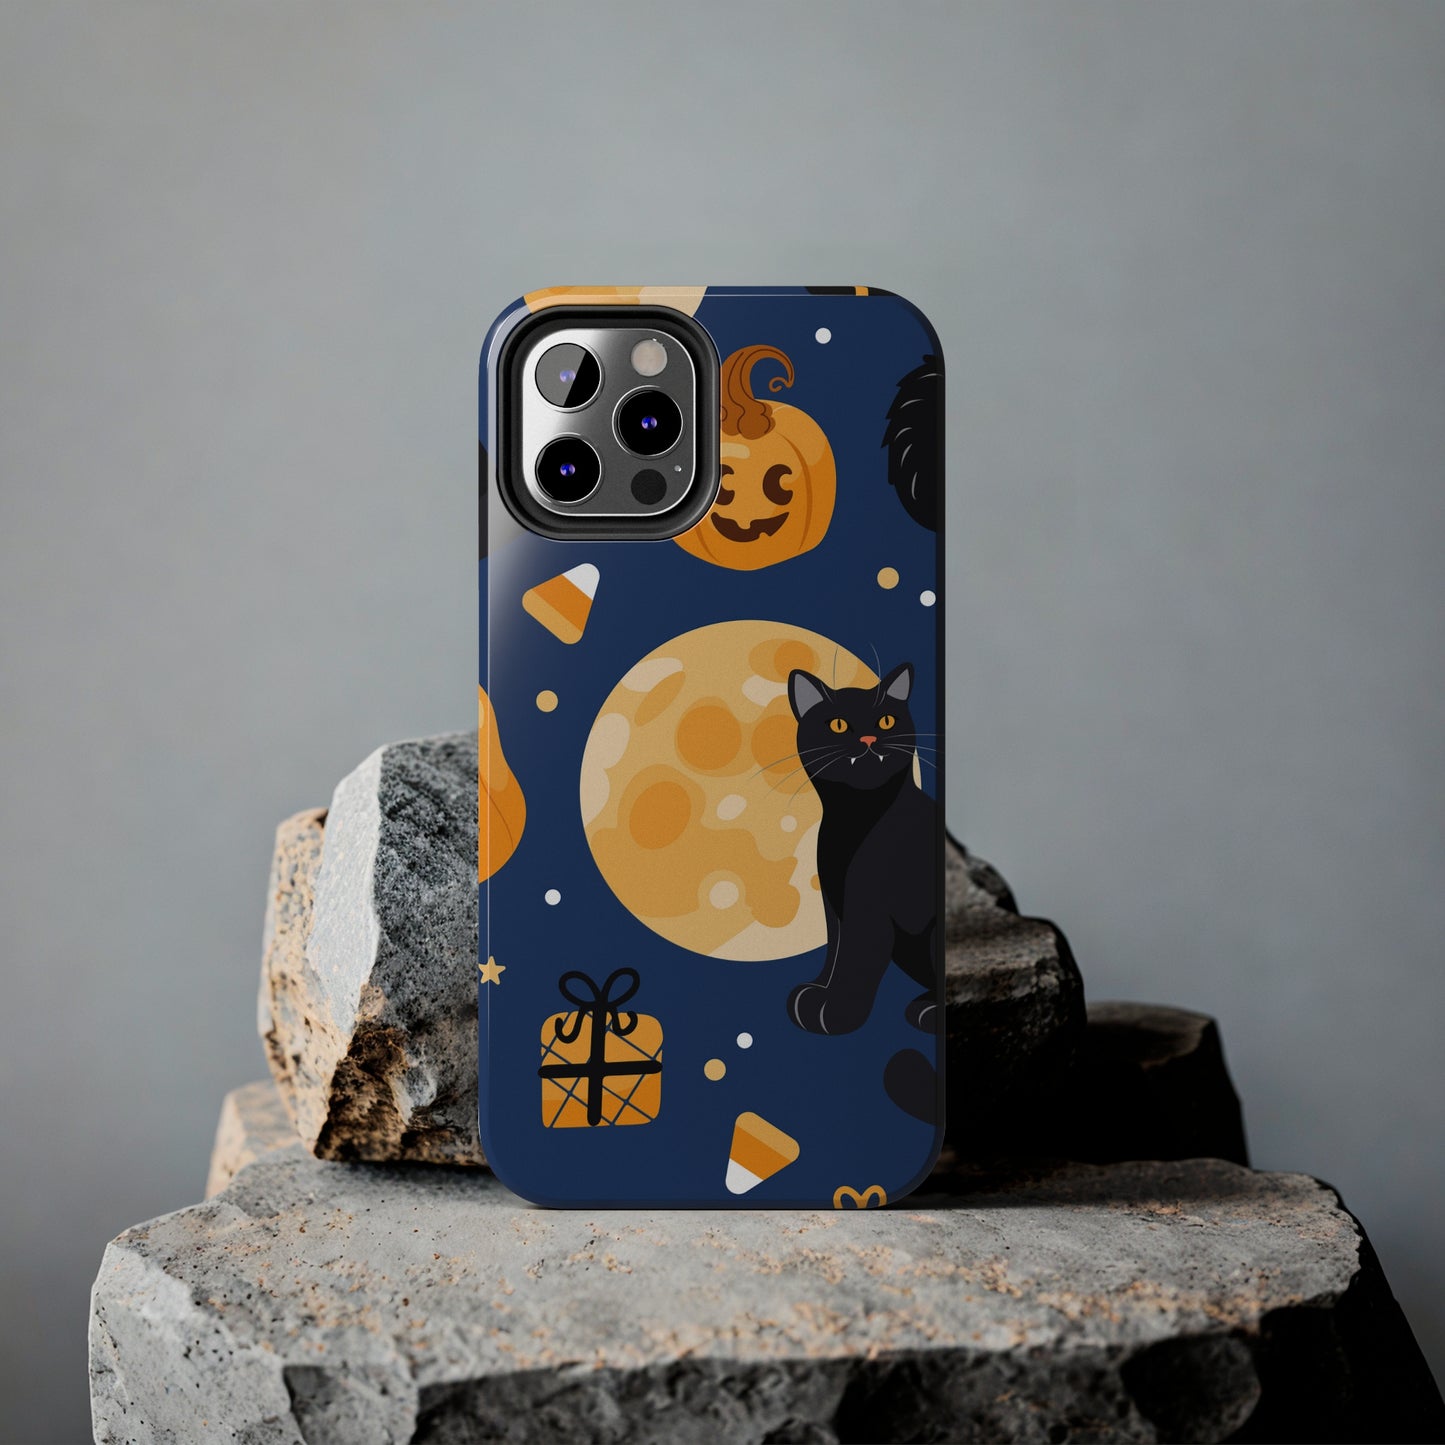 Moonlight Halloween Phone Case